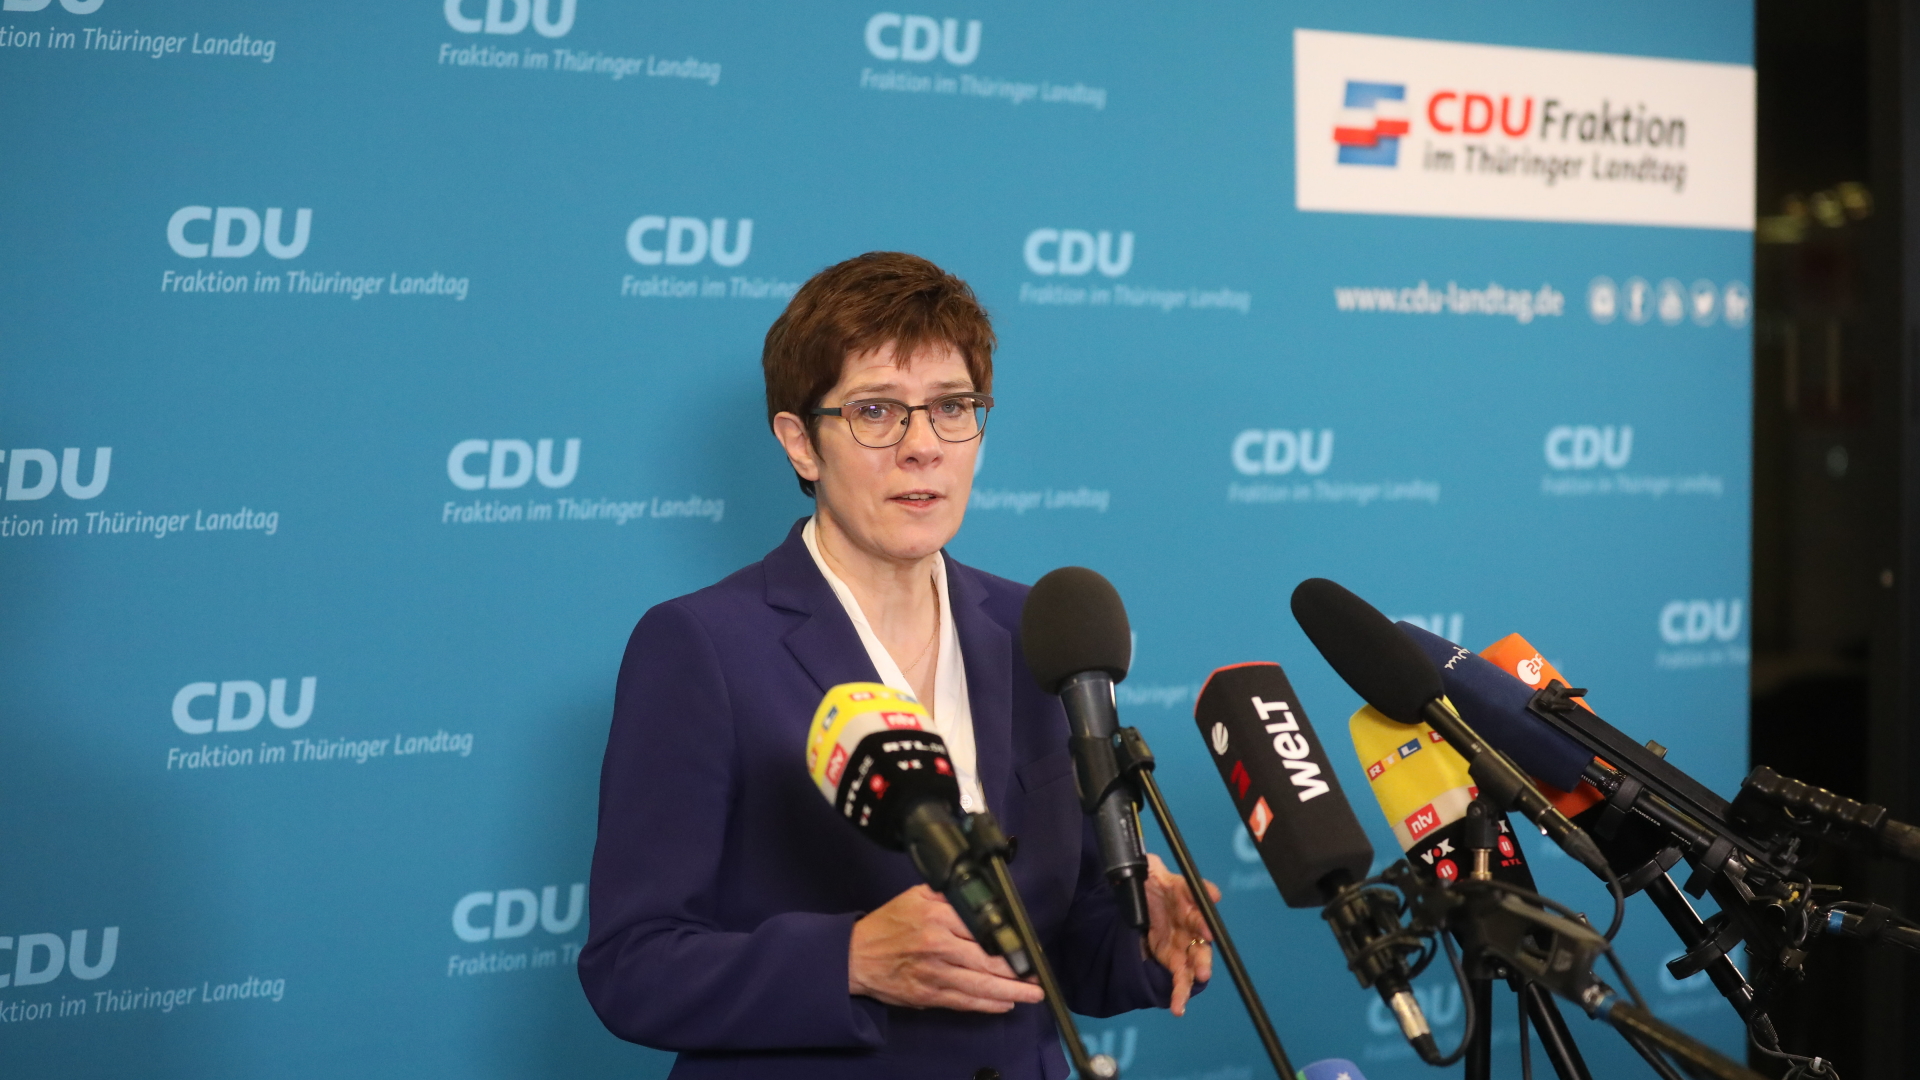 CDU in Thüringen will vorerst keine Neuwahl